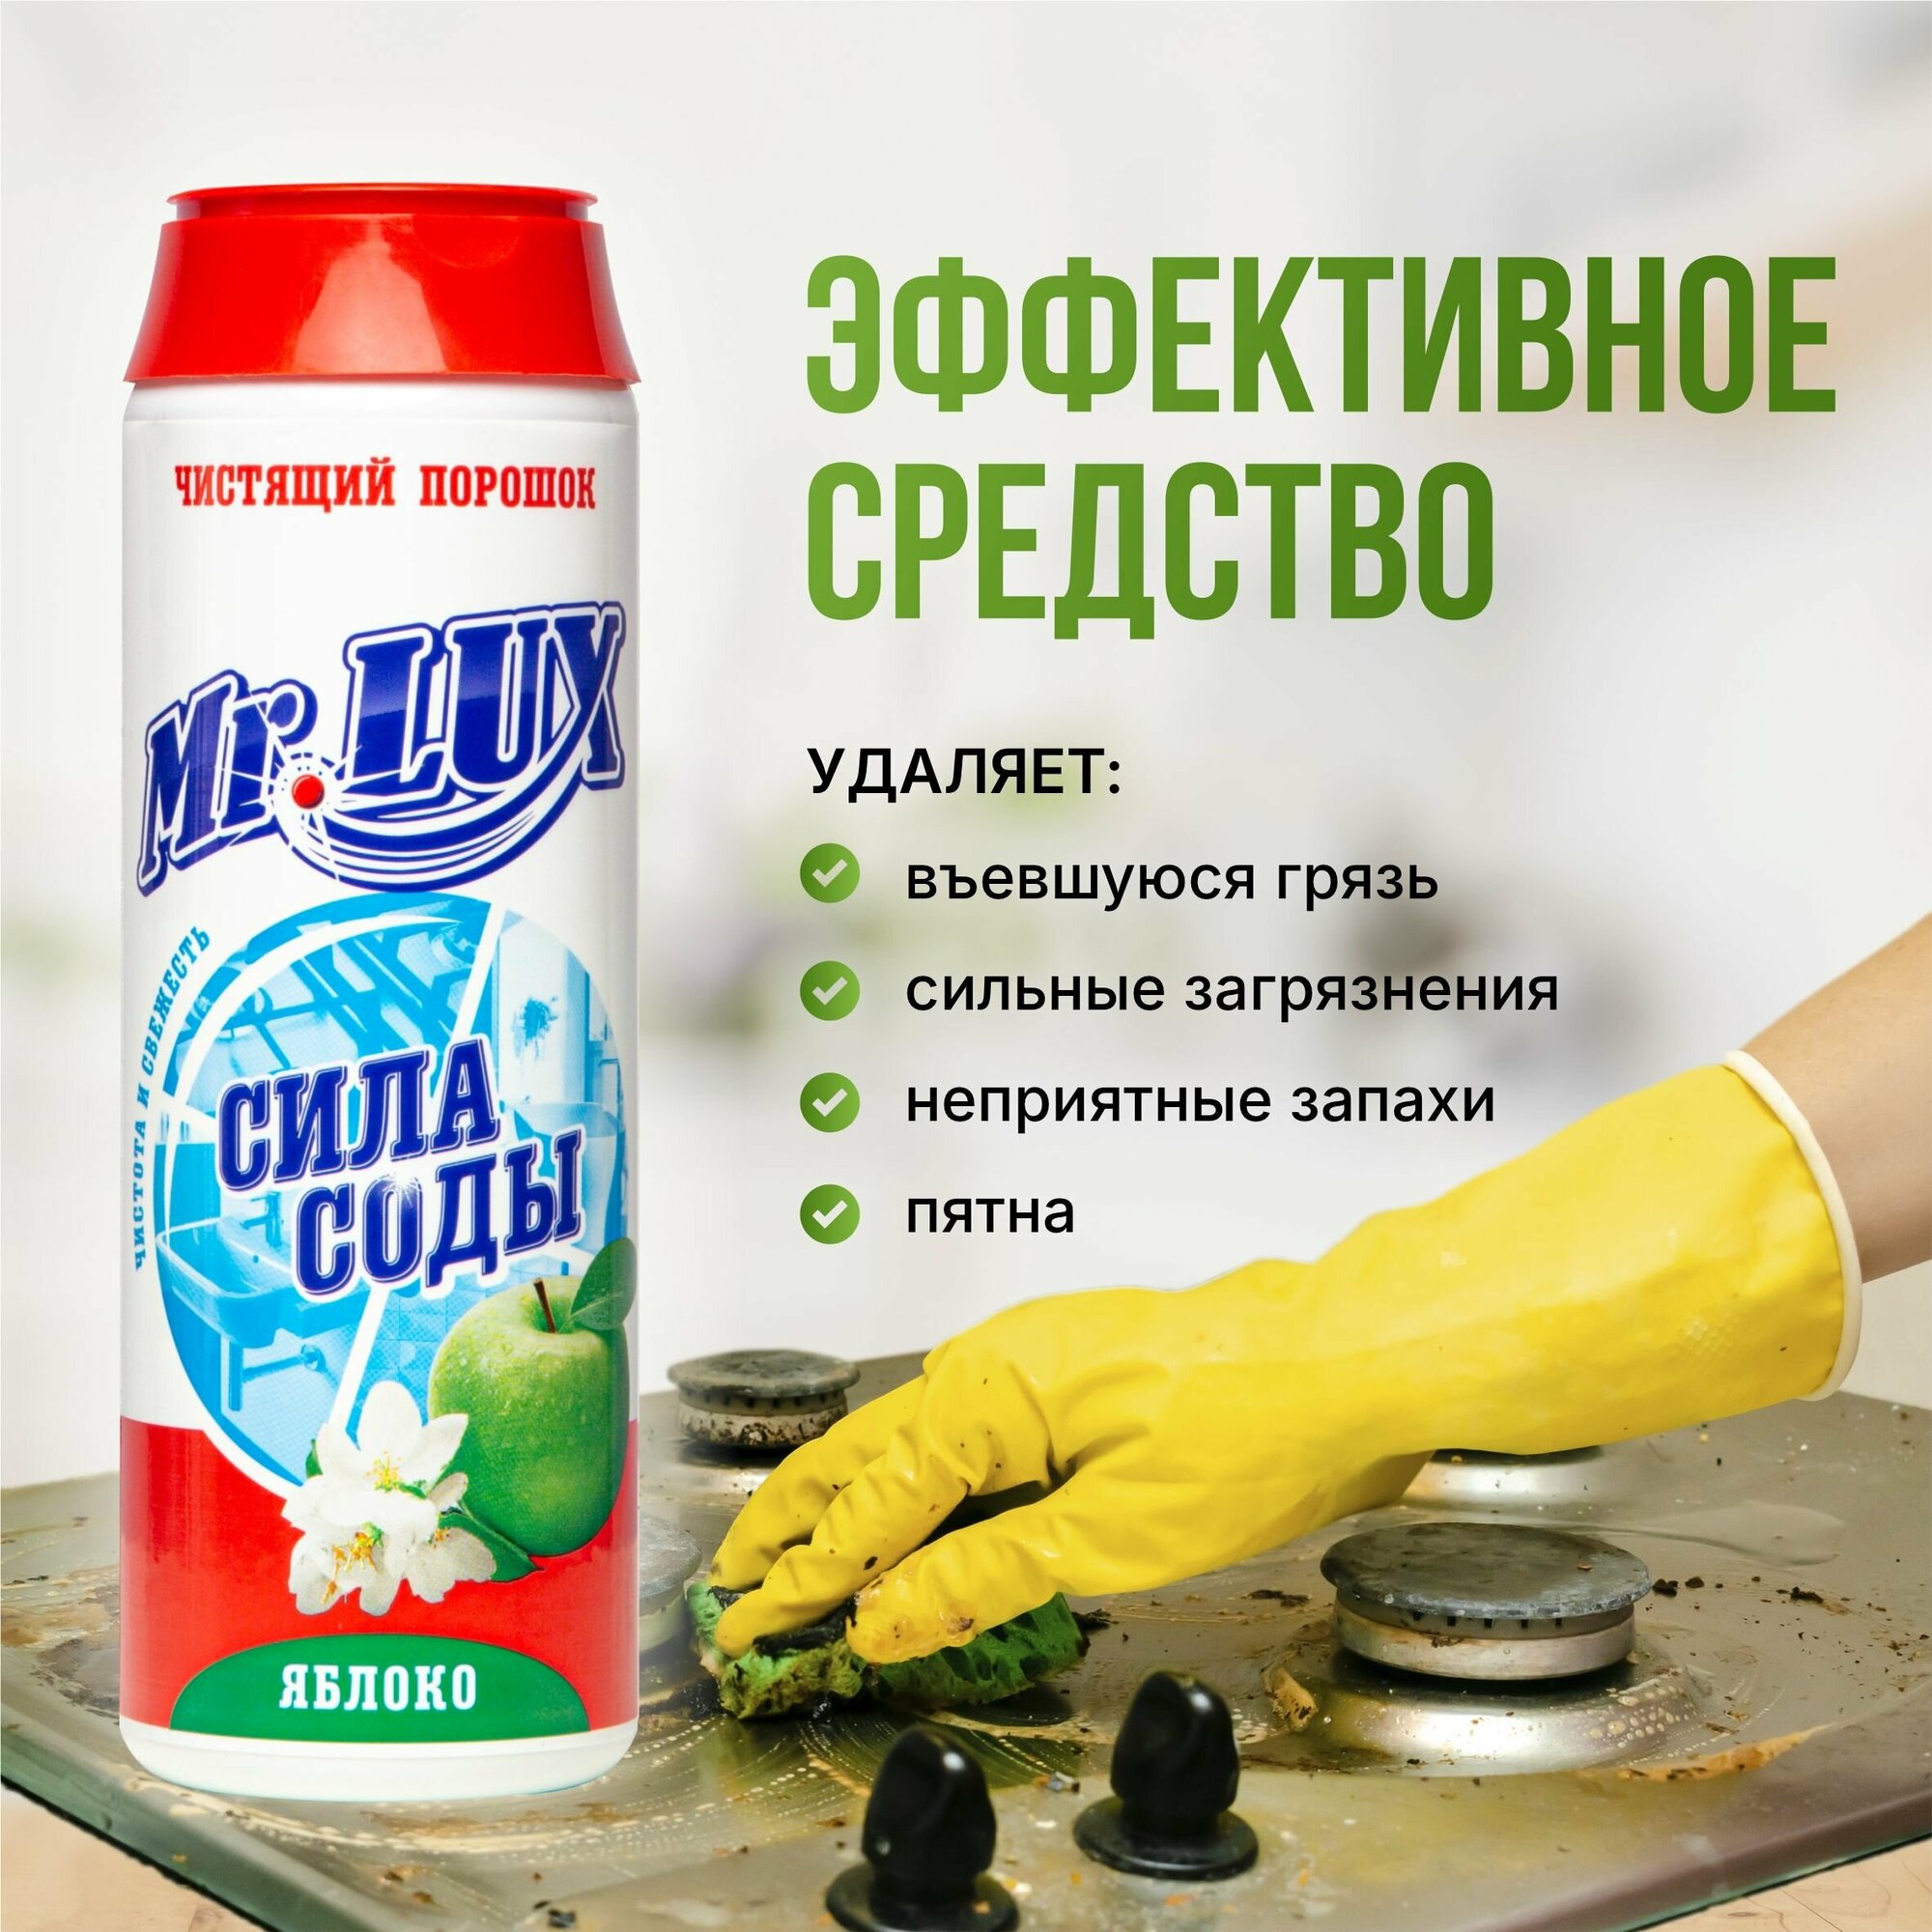 Чистящий порошок Mr.LUX, универсальное моющее средство для дома и кухни с ароматом Яблока, набор 3 шт.